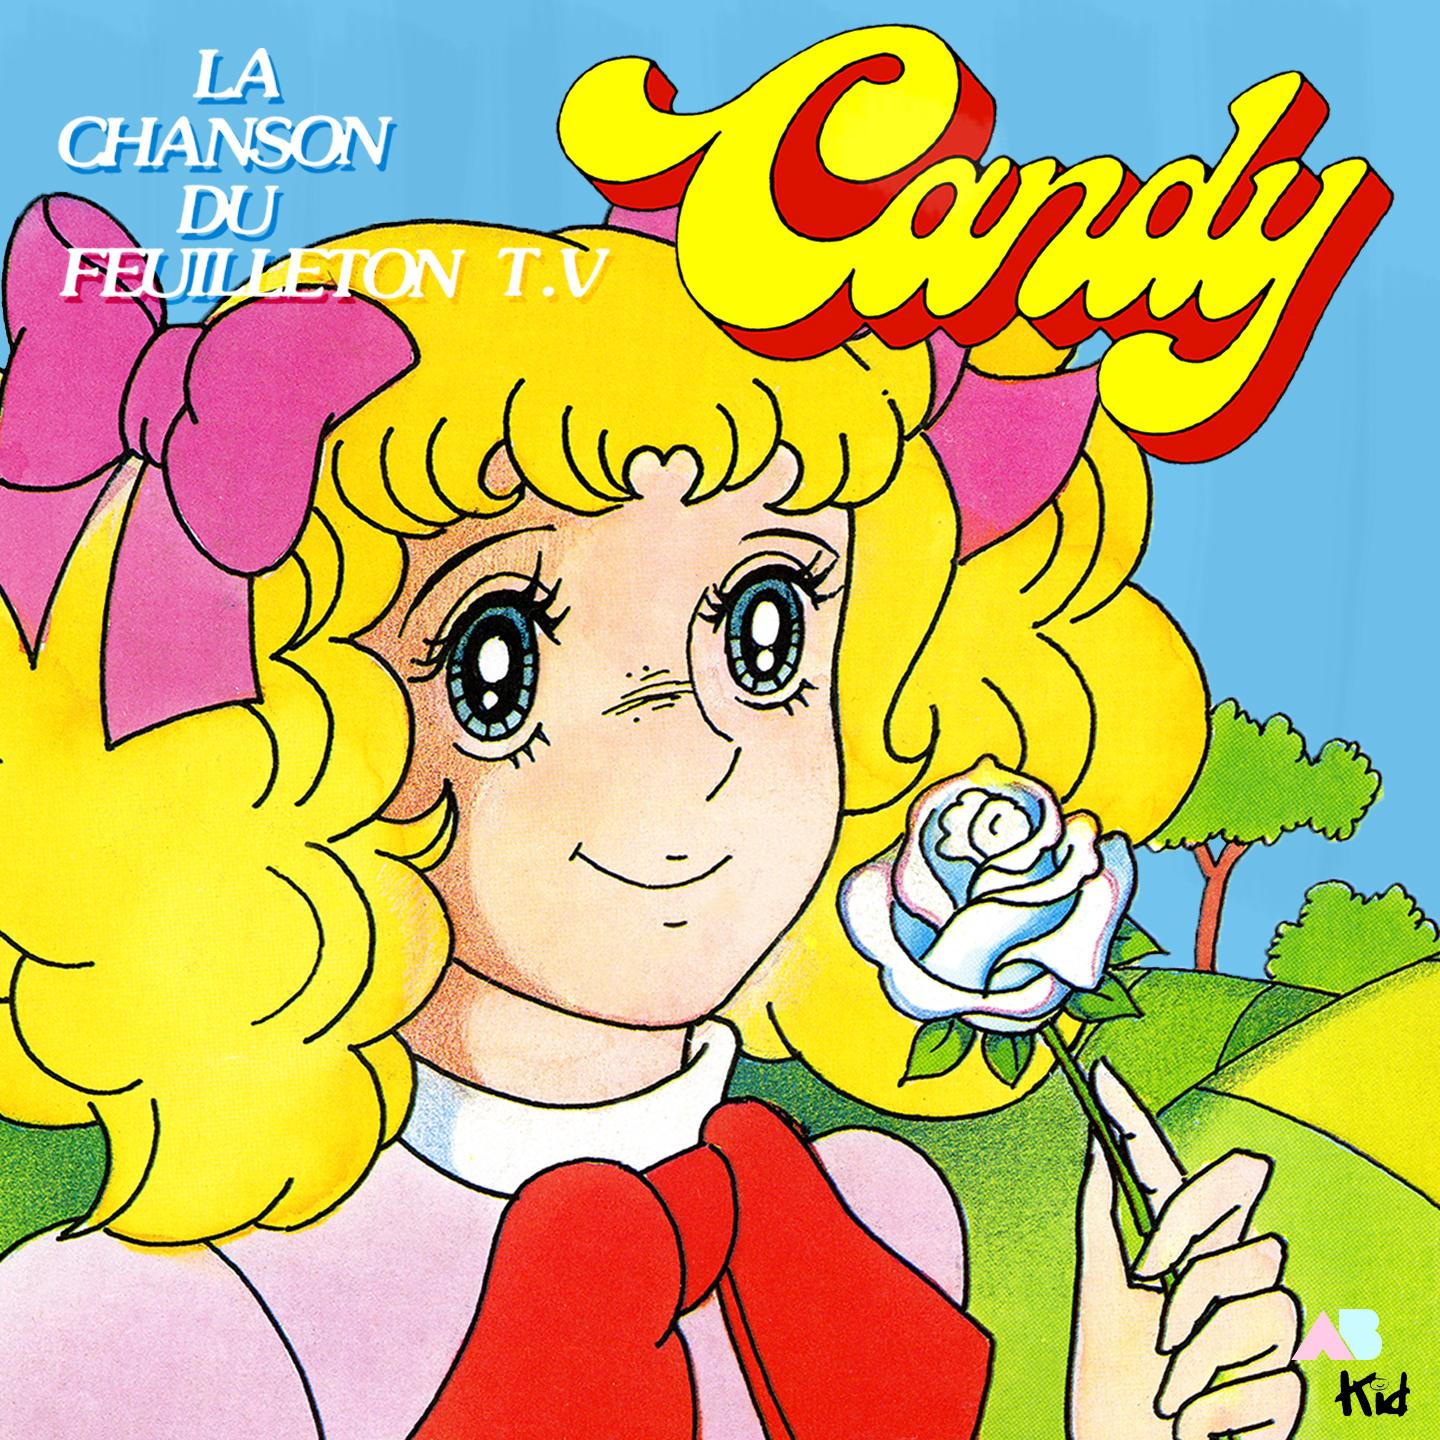 La chanson de Candy